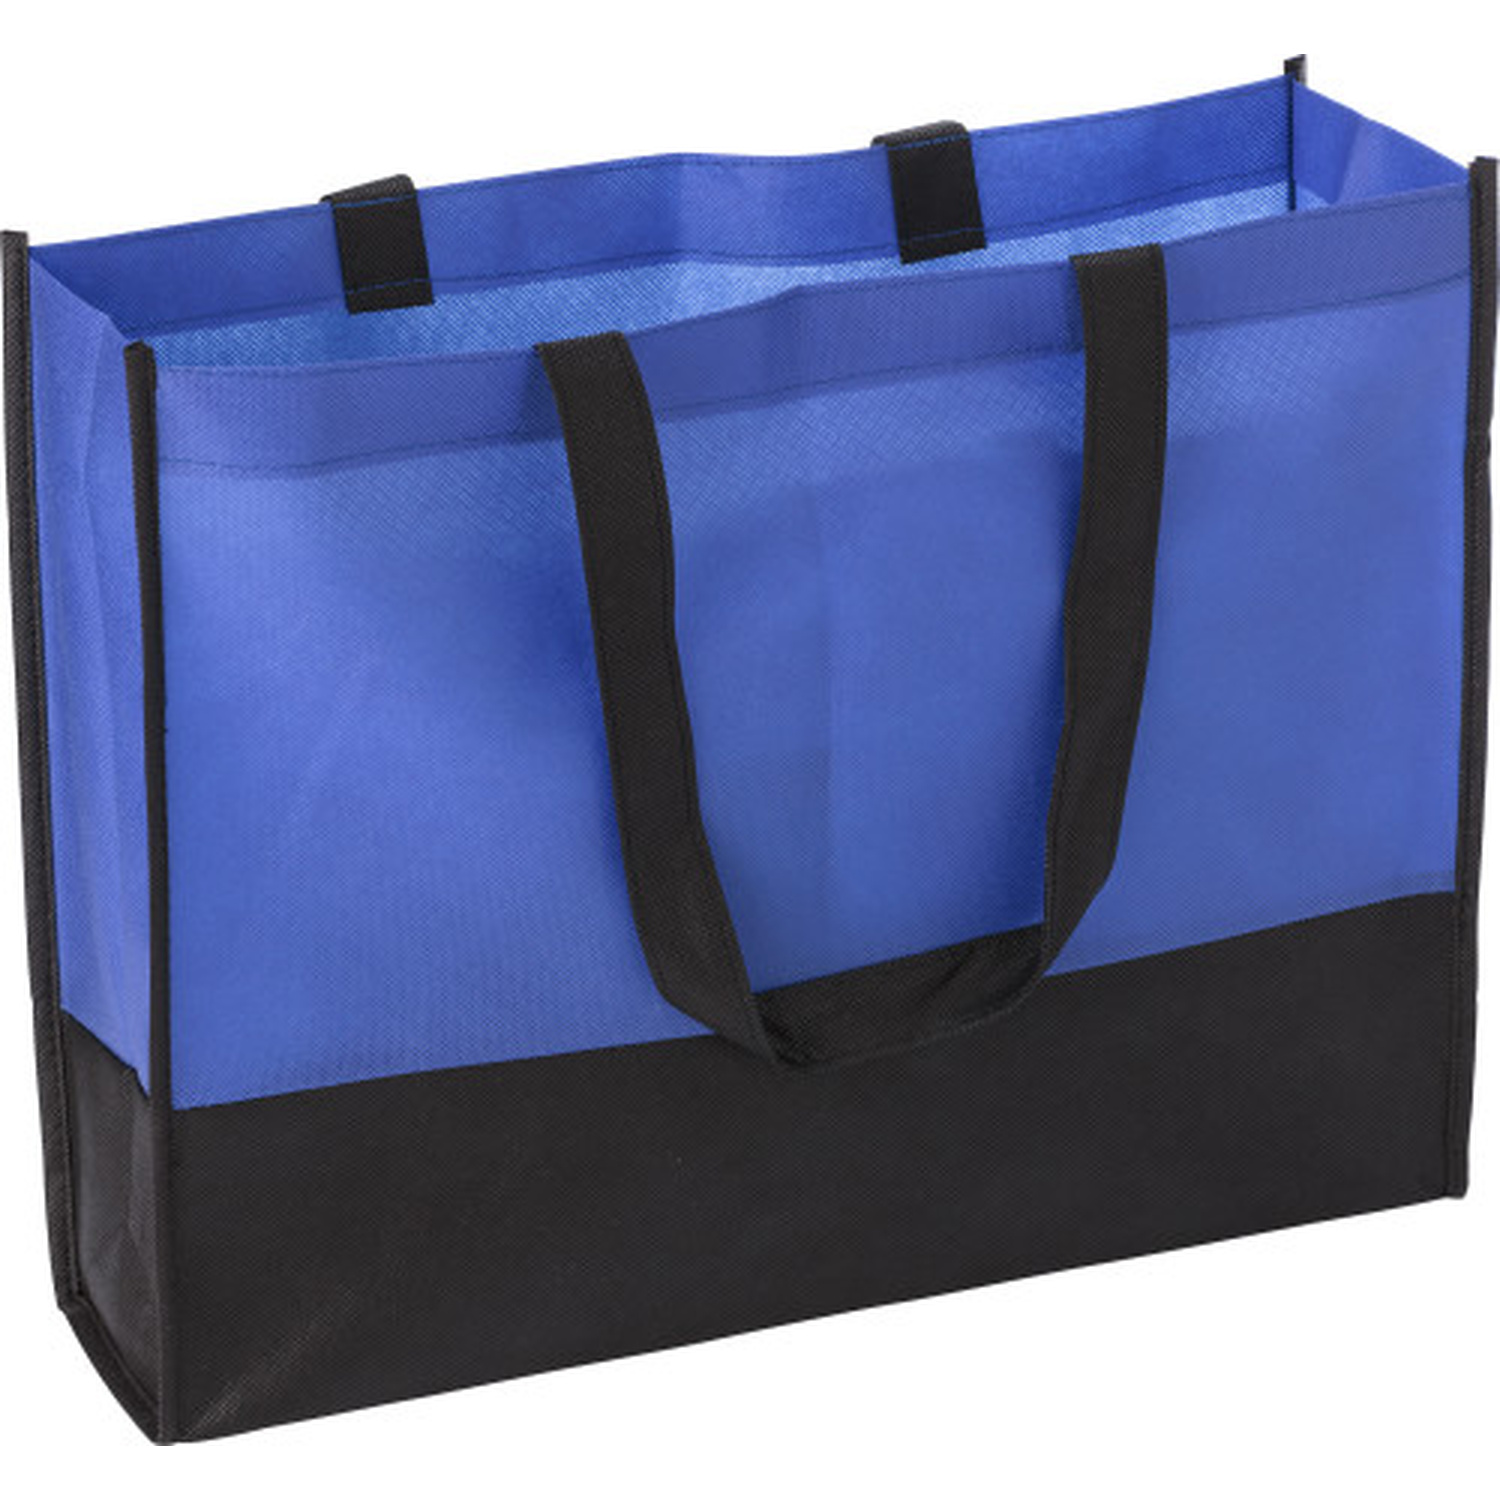 000971 023999999 3d135 frt pro01 fal - Non-Woven Contrast Shopping Bag